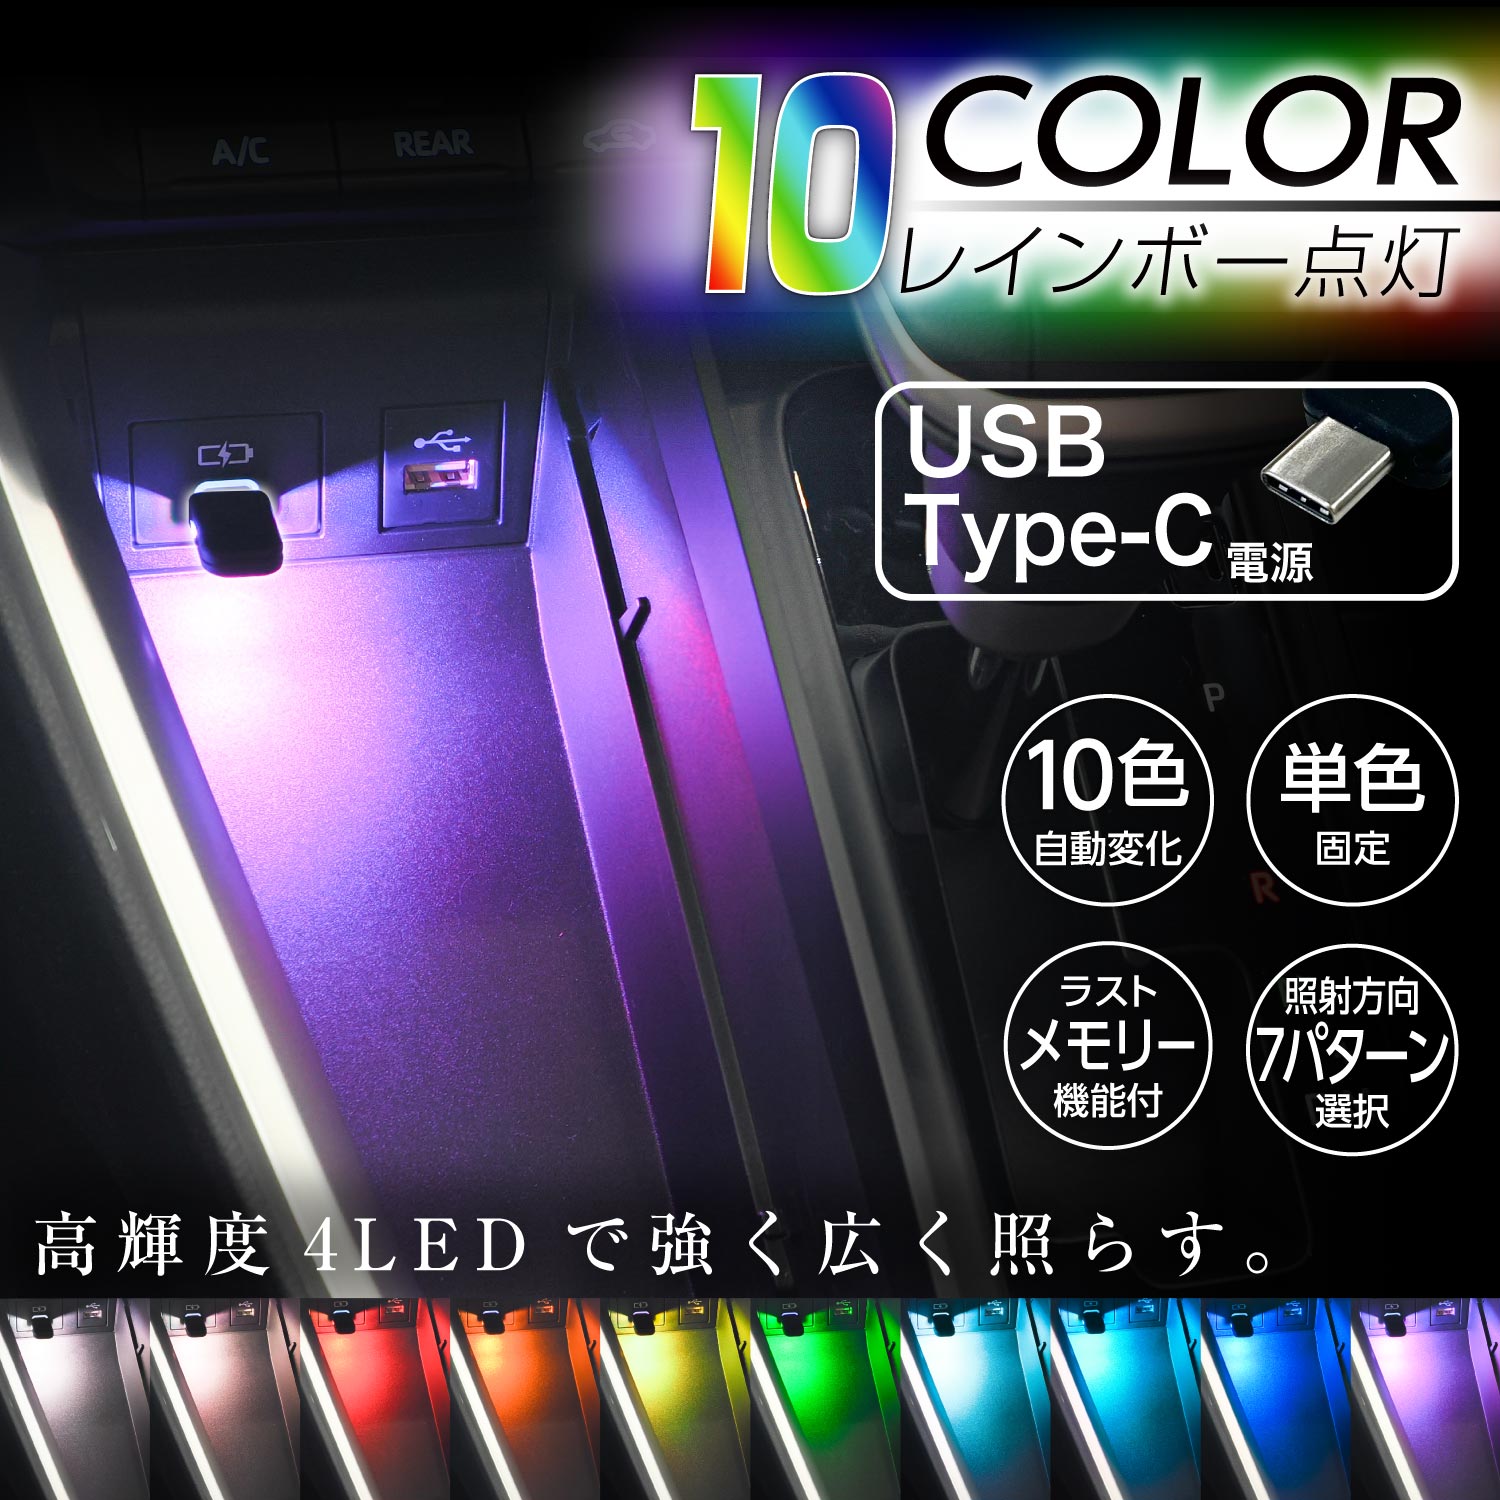 セイワ(SEIWA) 車内用品 LED イルミネーション USB-C ミニタッチライト IMP234 USB Type-C 10色切替機能 調光機能付き 7種の照射パターン RGB高輝度LED採用 タッチセンサースイッチ